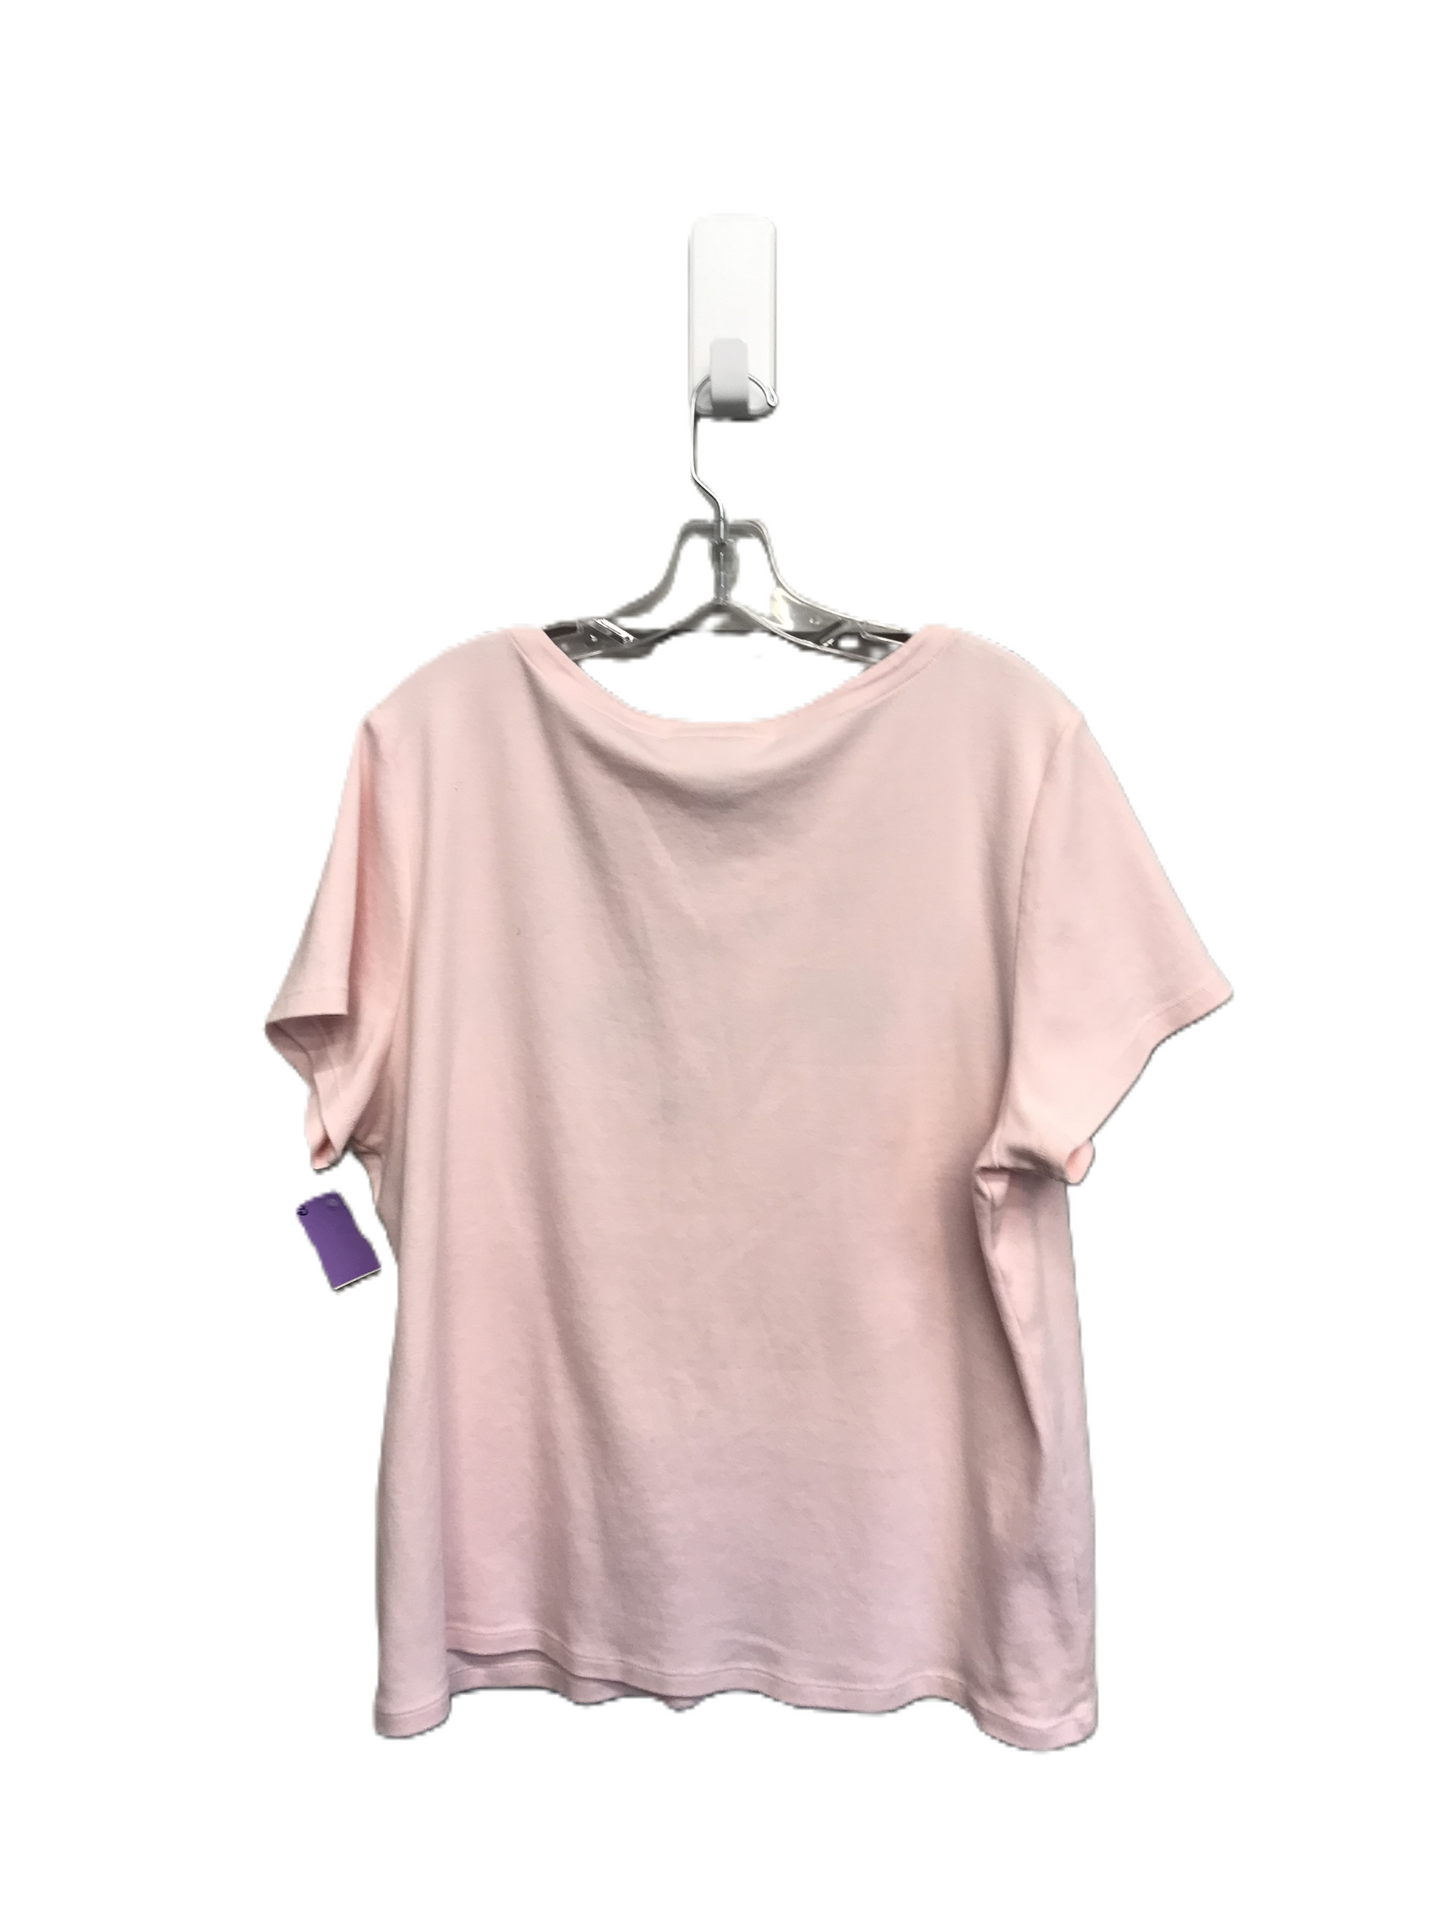 Pink Top Short Sleeve By Karen Scott, Size: 2x